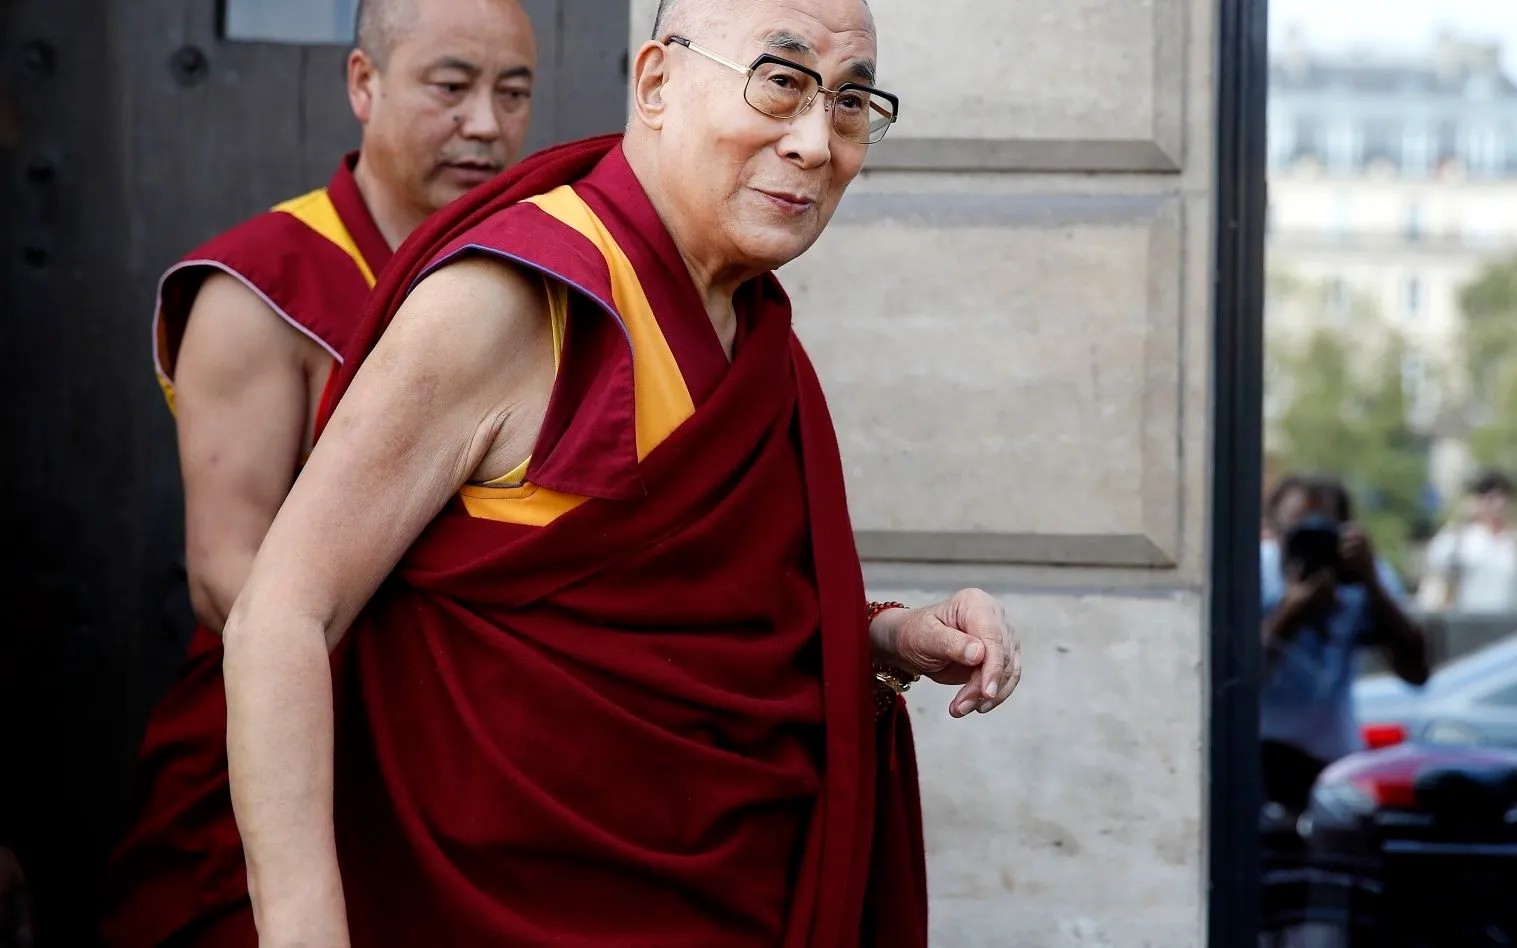 Далай-лама: «Цензура аморальна. Бездумная медитация бессмысленна»